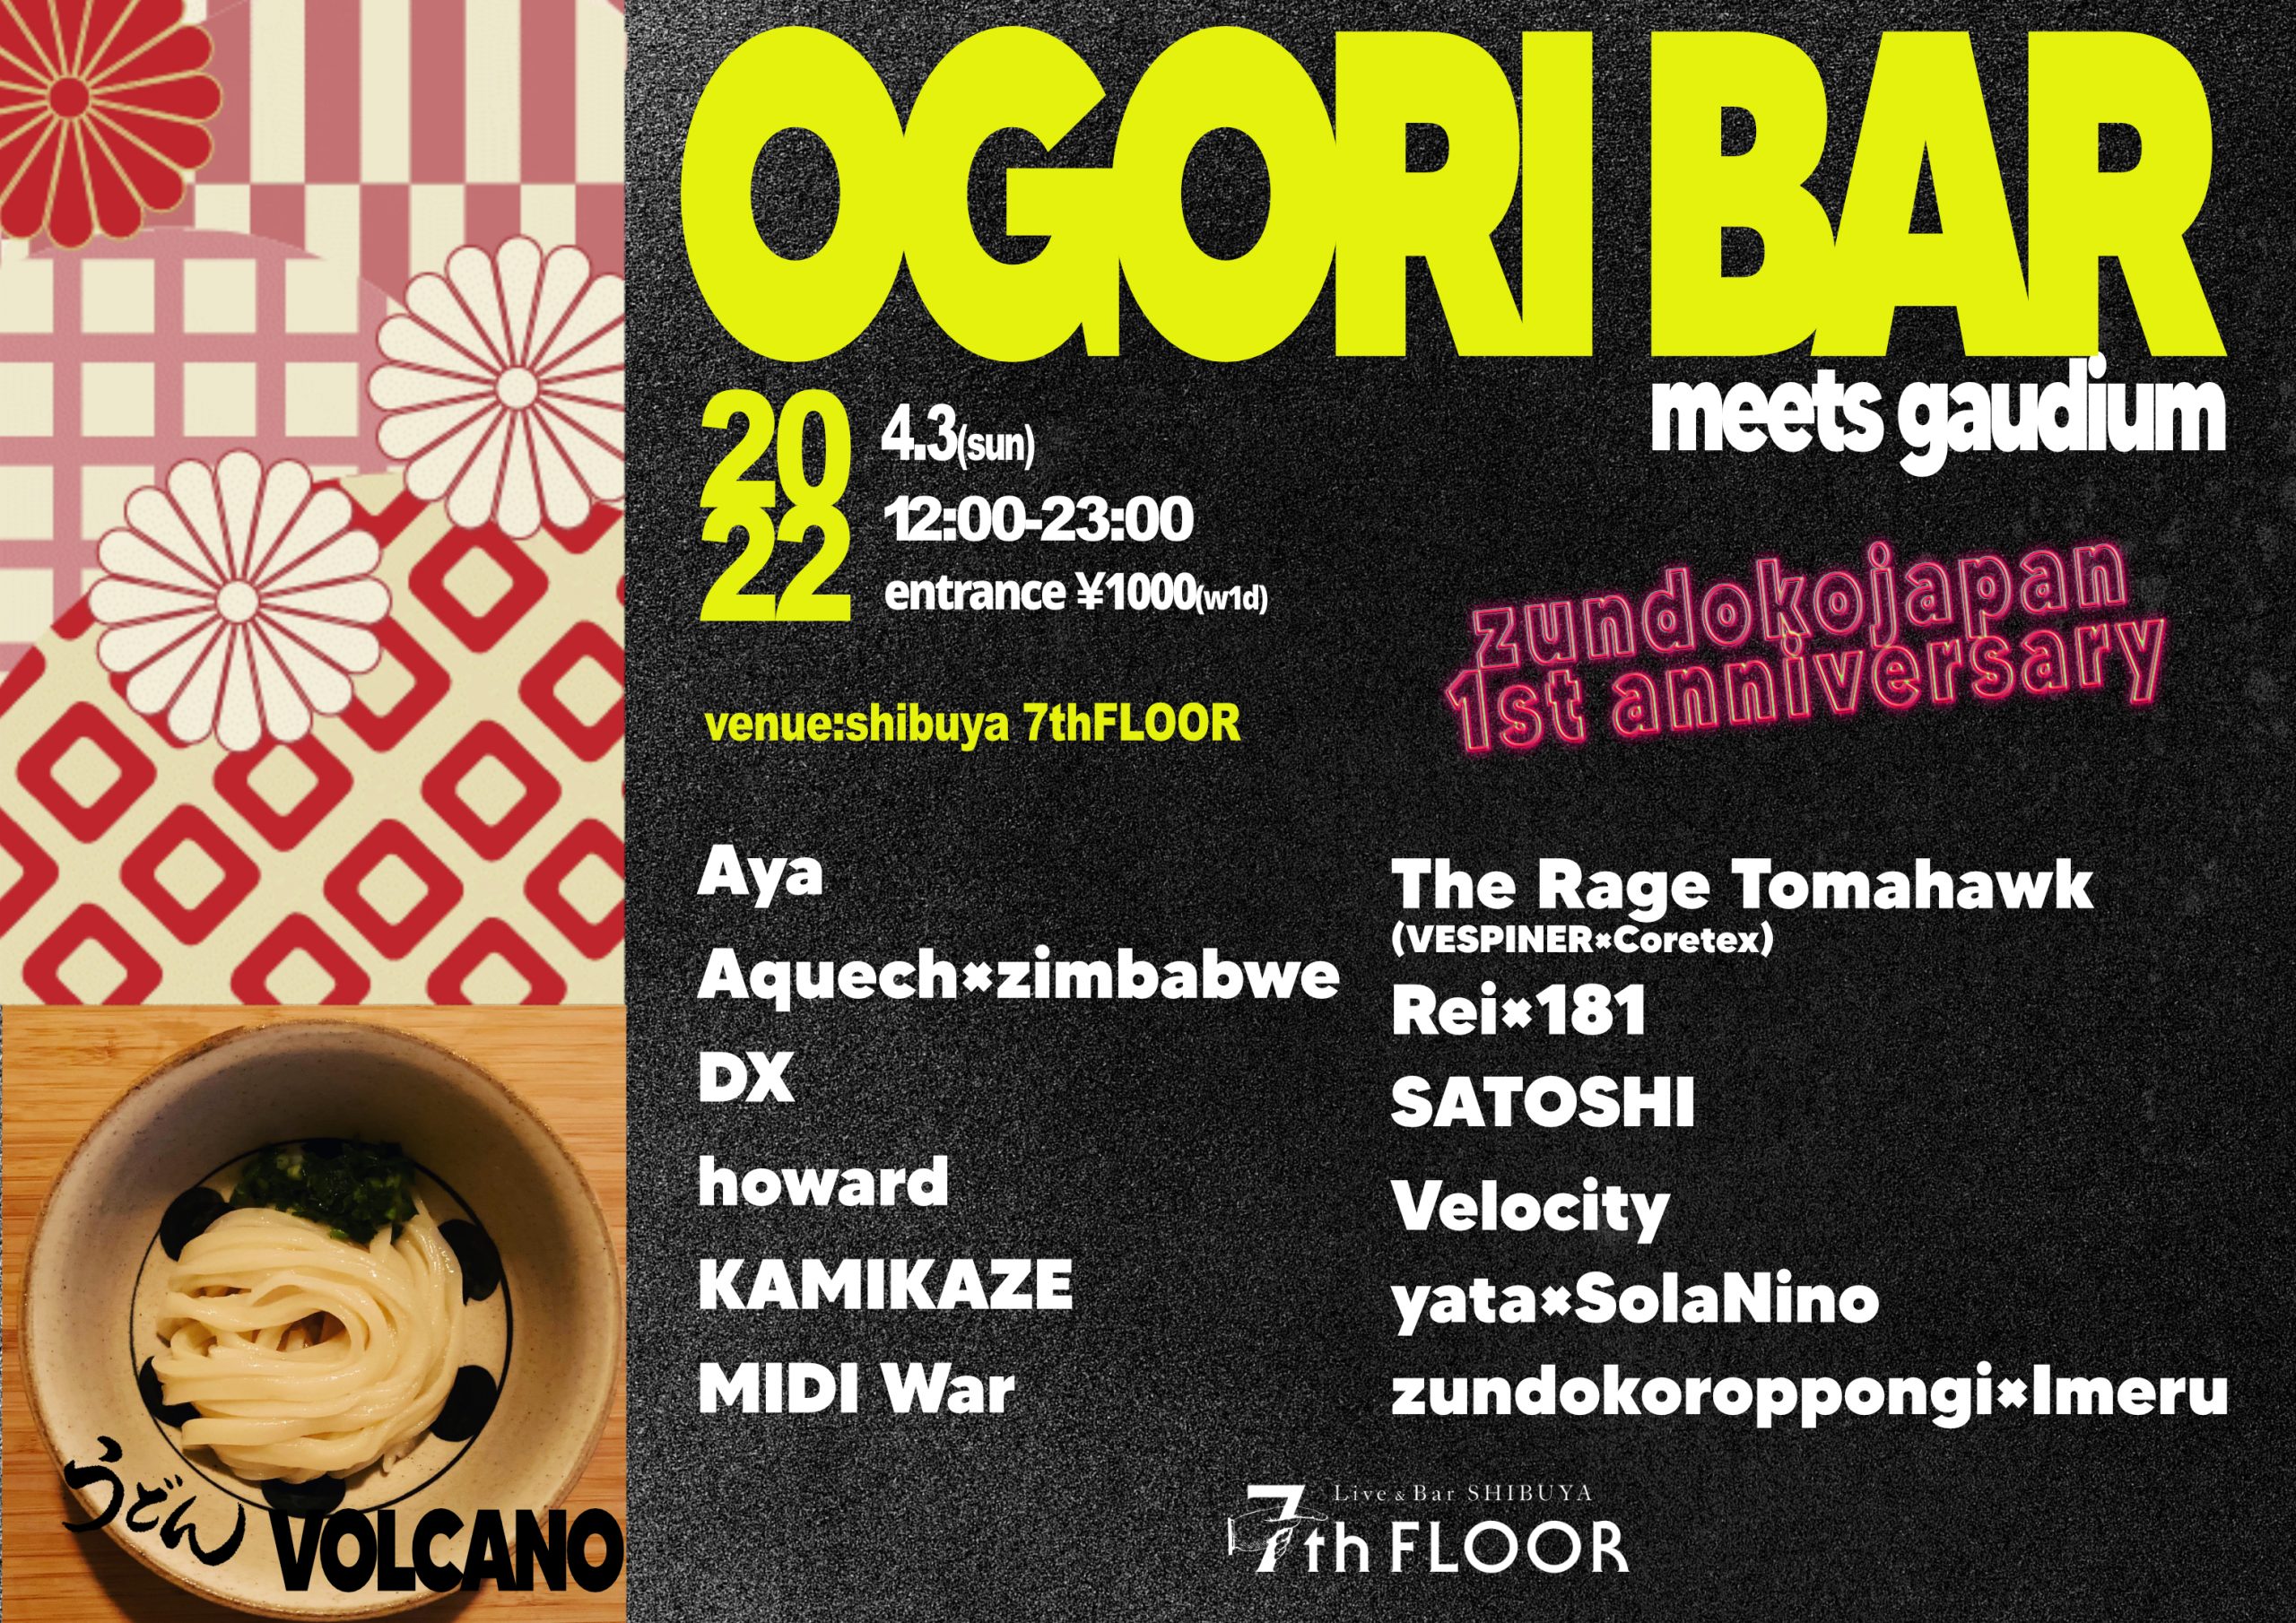 「ogori bar」 meets gaudium -zundoko japan 1st anniversaryテクノとドラムンとウドン-